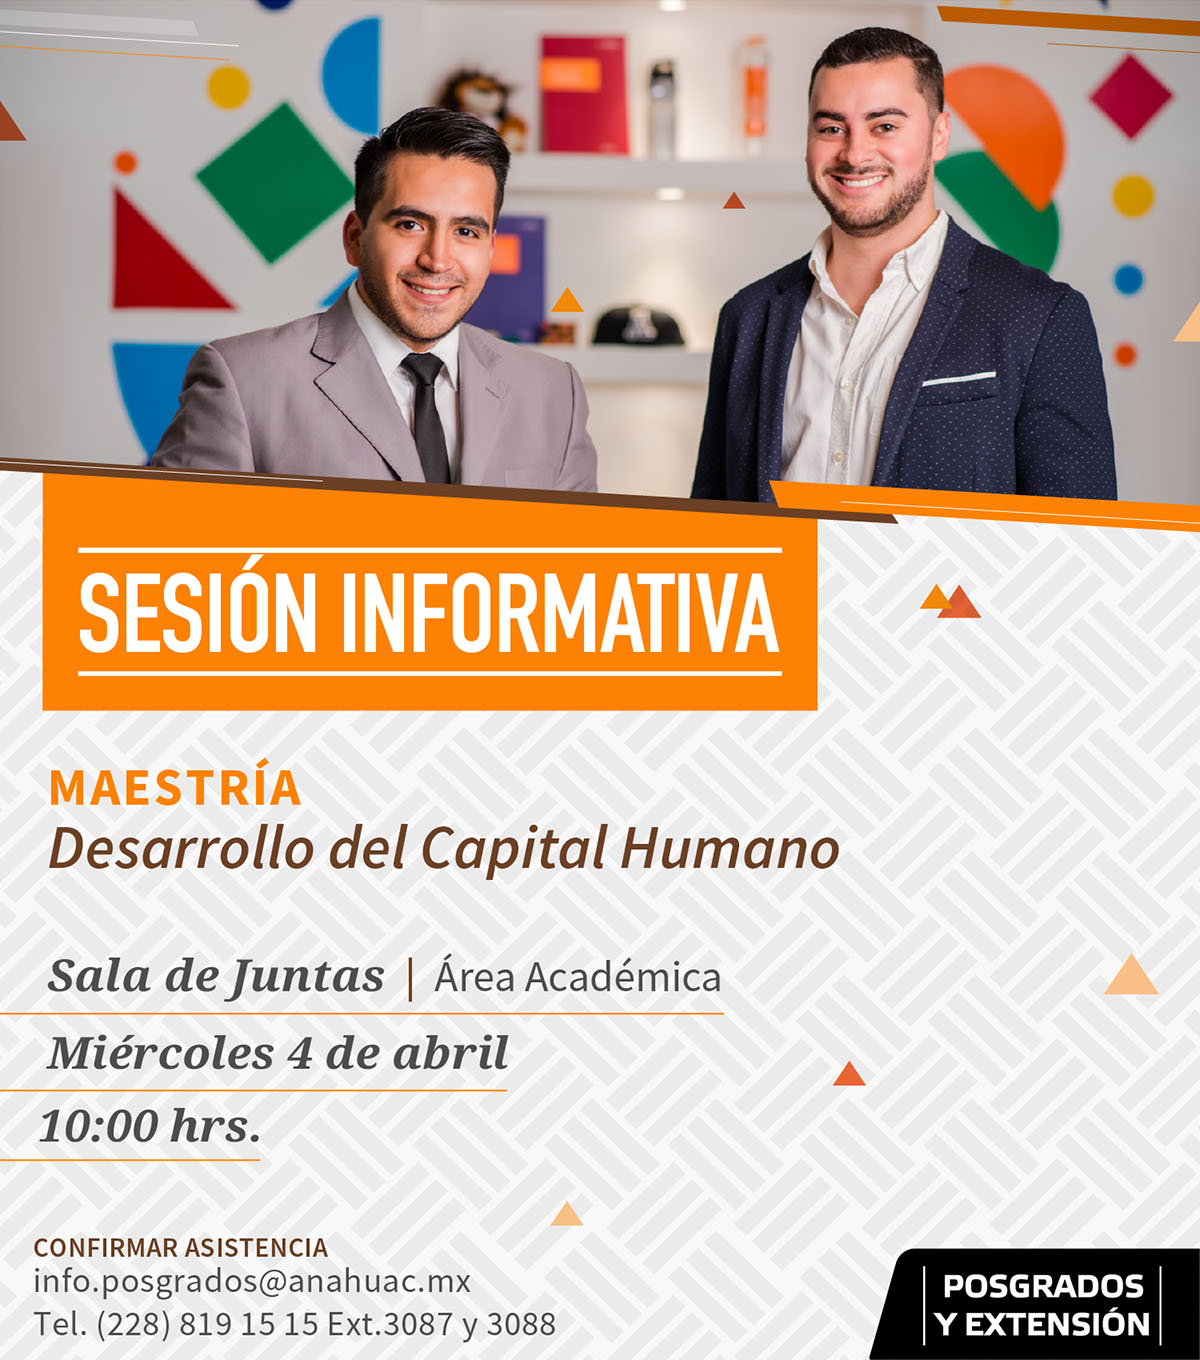 Maestría en Desarrollo del Capital Humano: Sesión Informativa